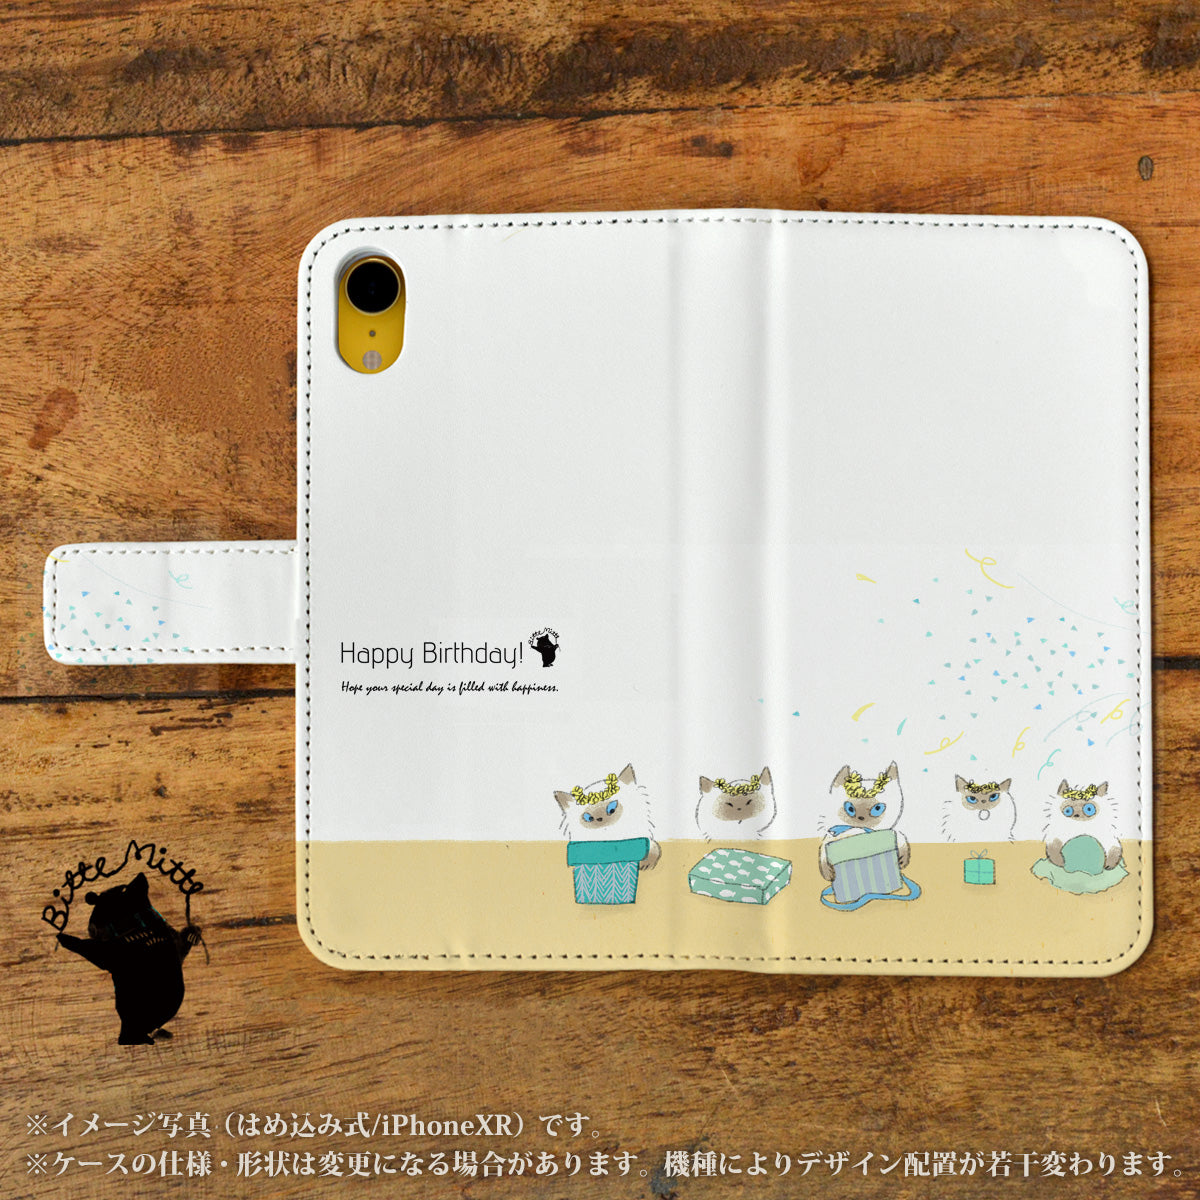 Bitte Mitte!ブランドのデザイン画を印刷したはめ込み式手帳型スマホケース「子猫たちとプレゼント」のイメージ写真です。機種はiPhoneXRです。